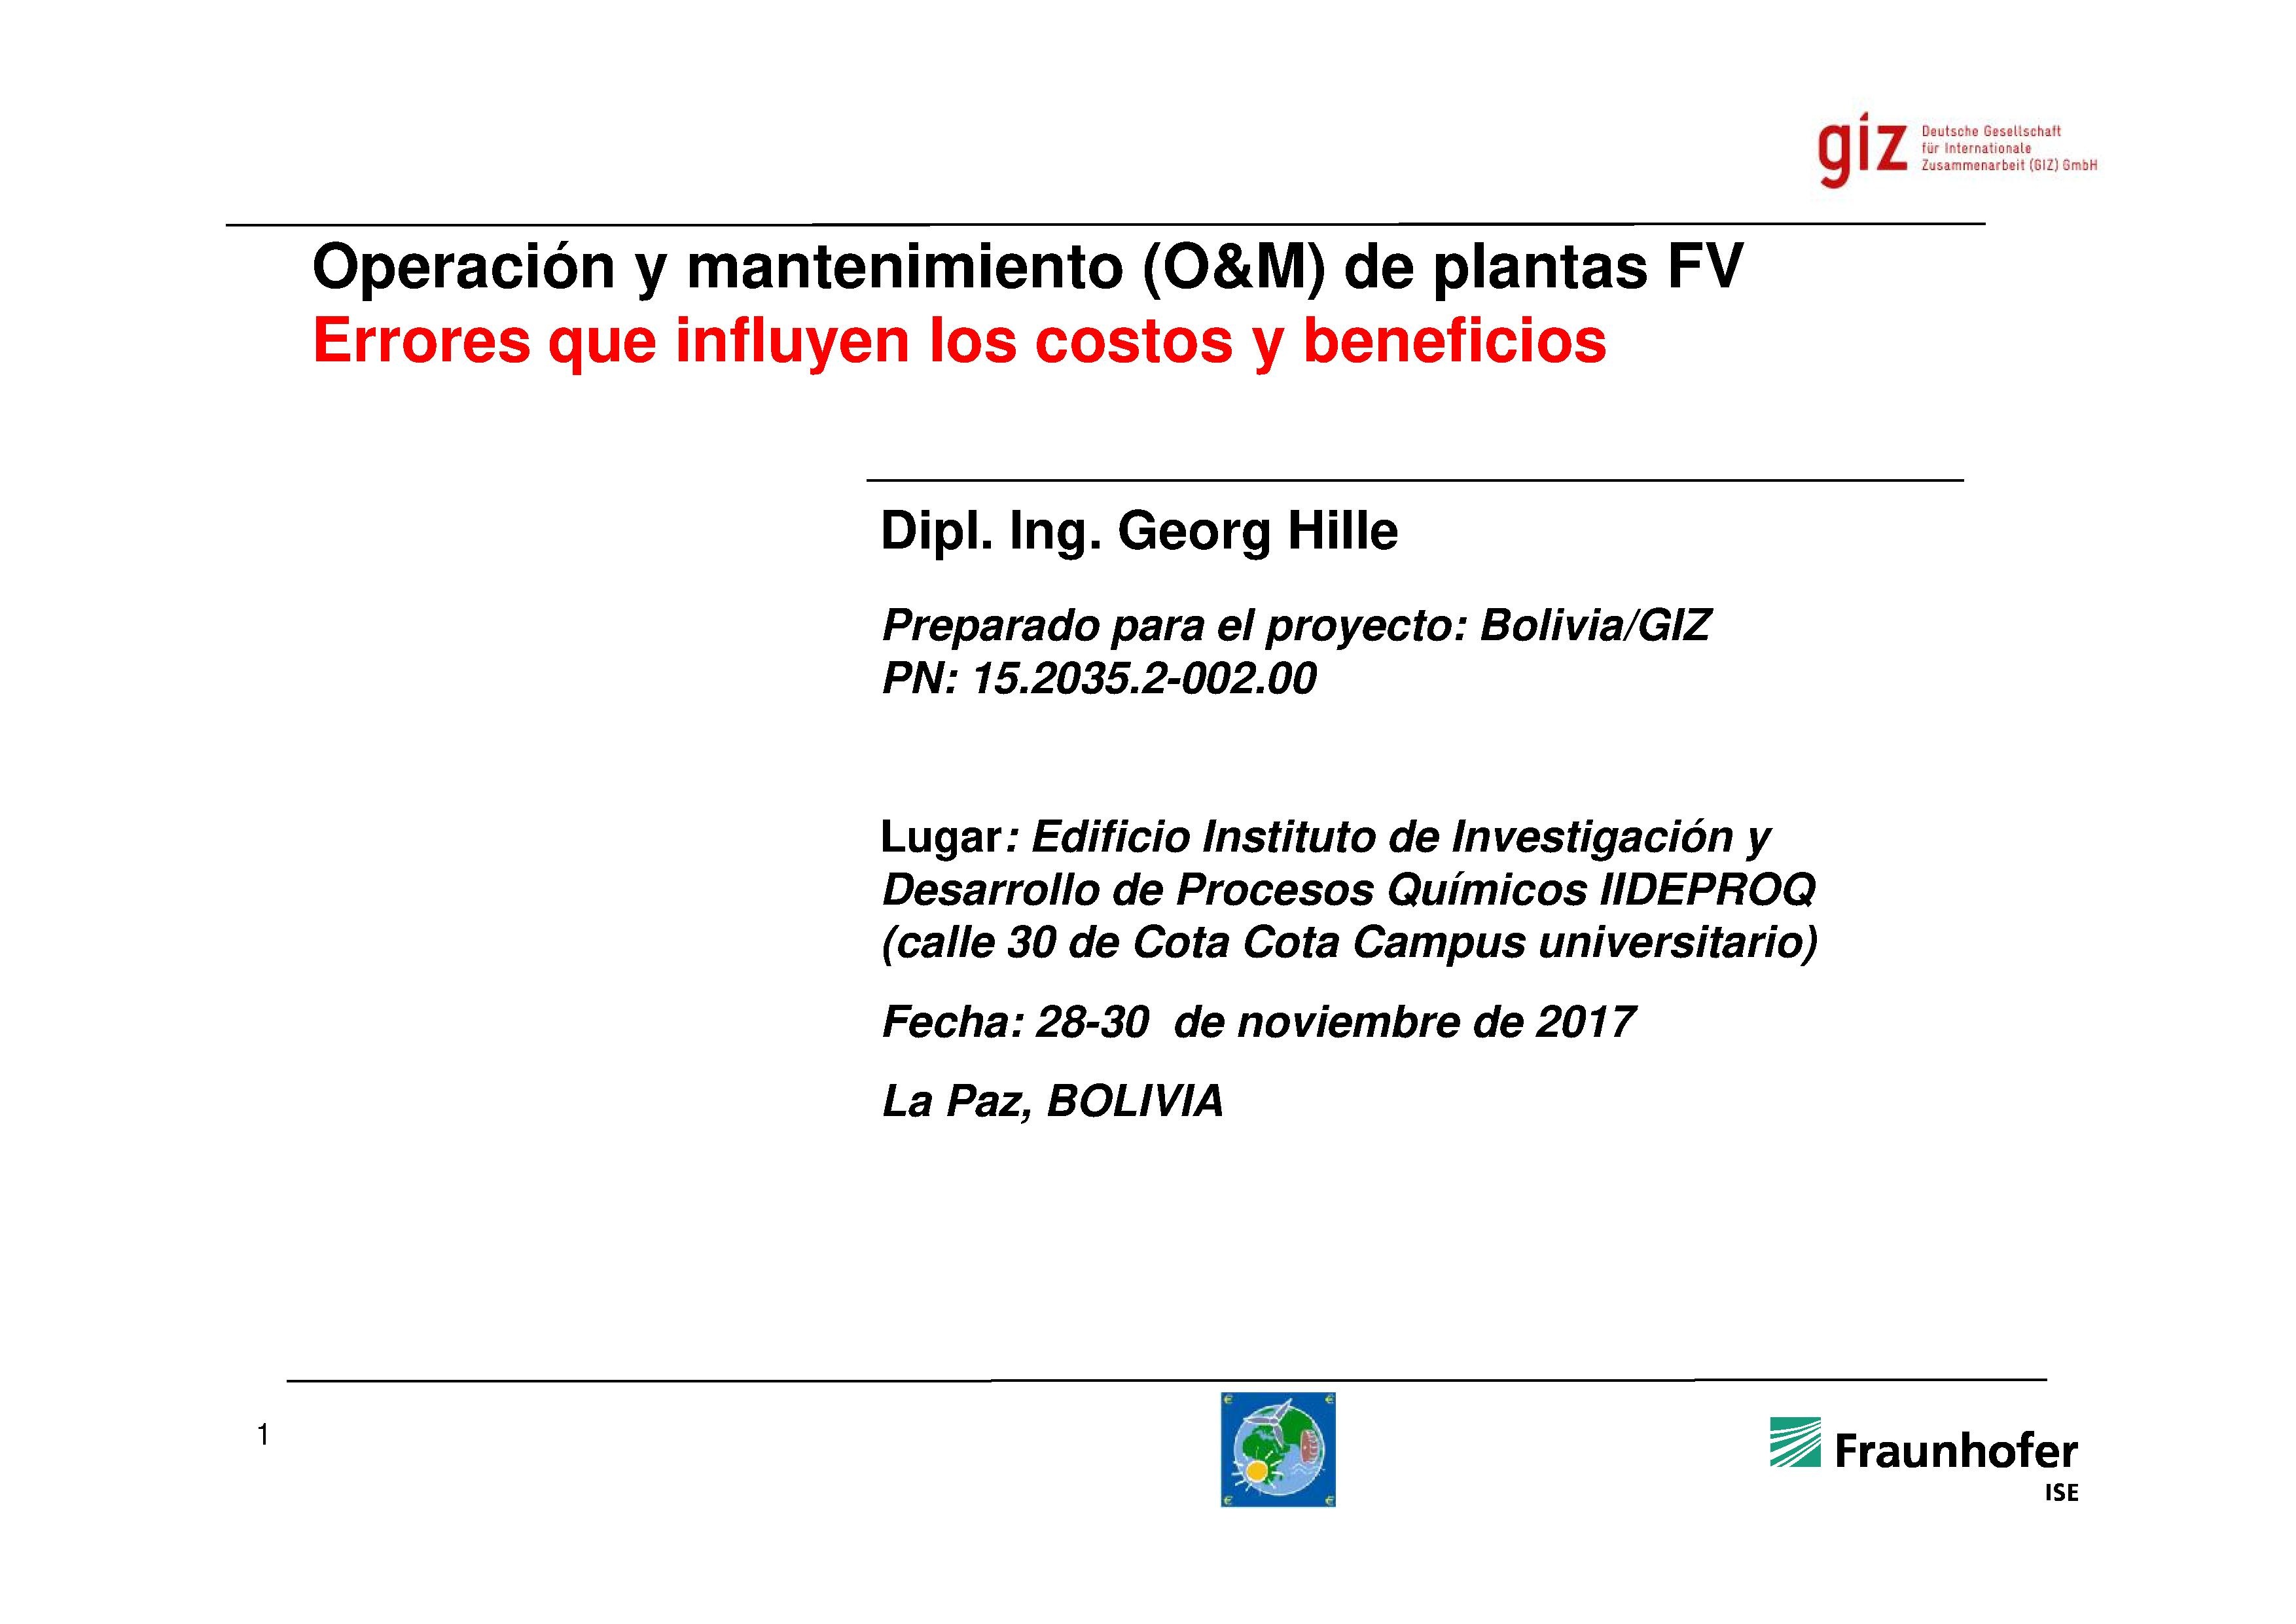 • Operación y mantenimiento (O&M) de plantas FV, errores que influyen en los costos y beneficios (Georg Hille)